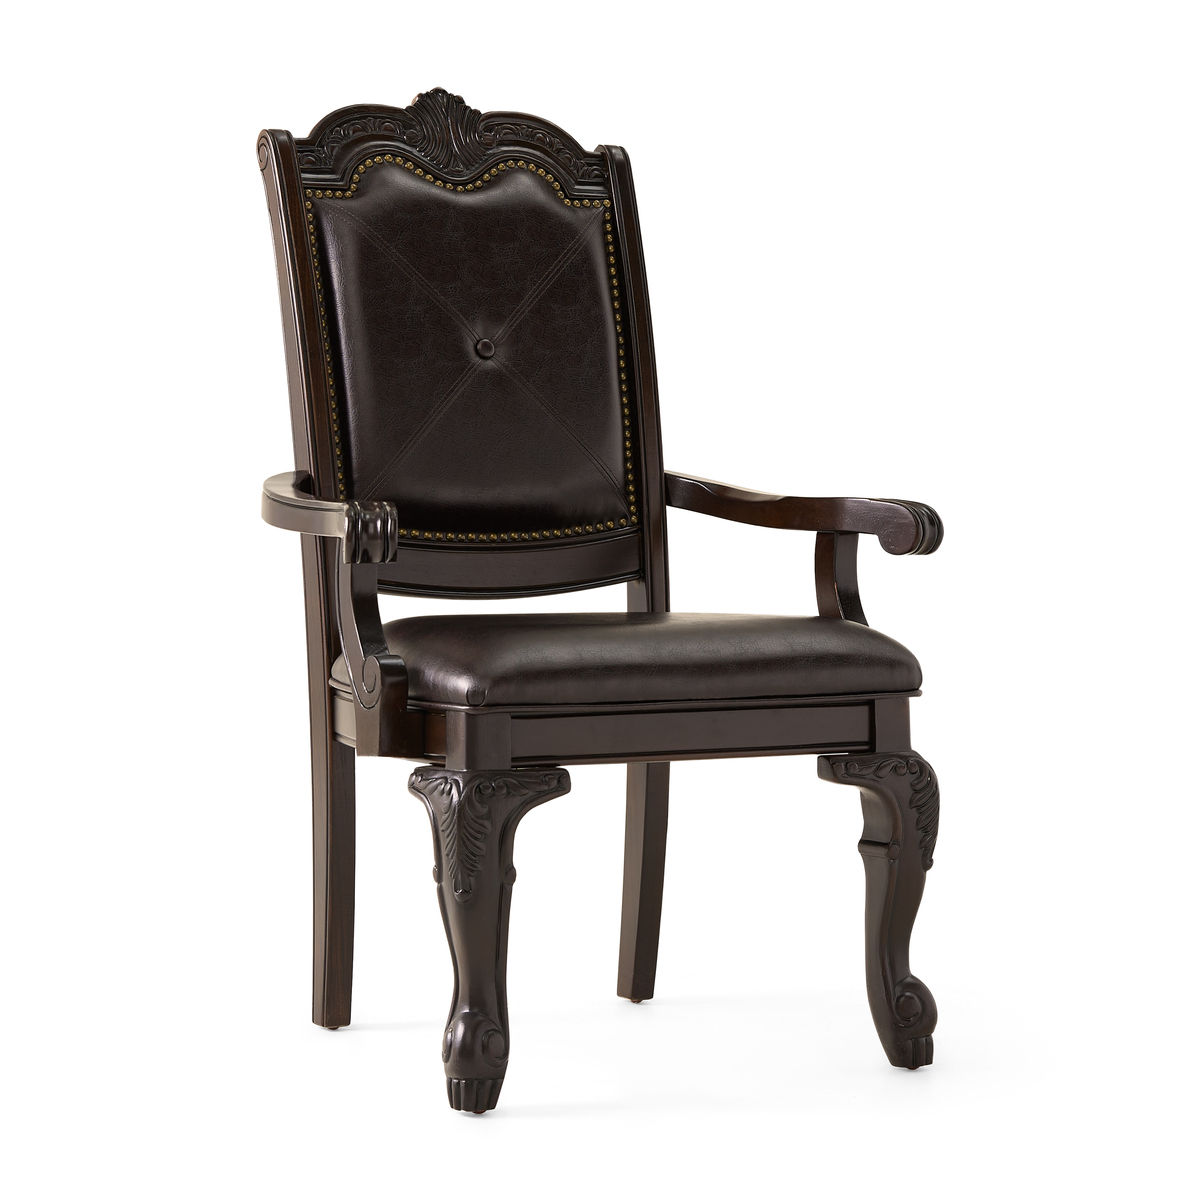 Kiera II Arm Chair